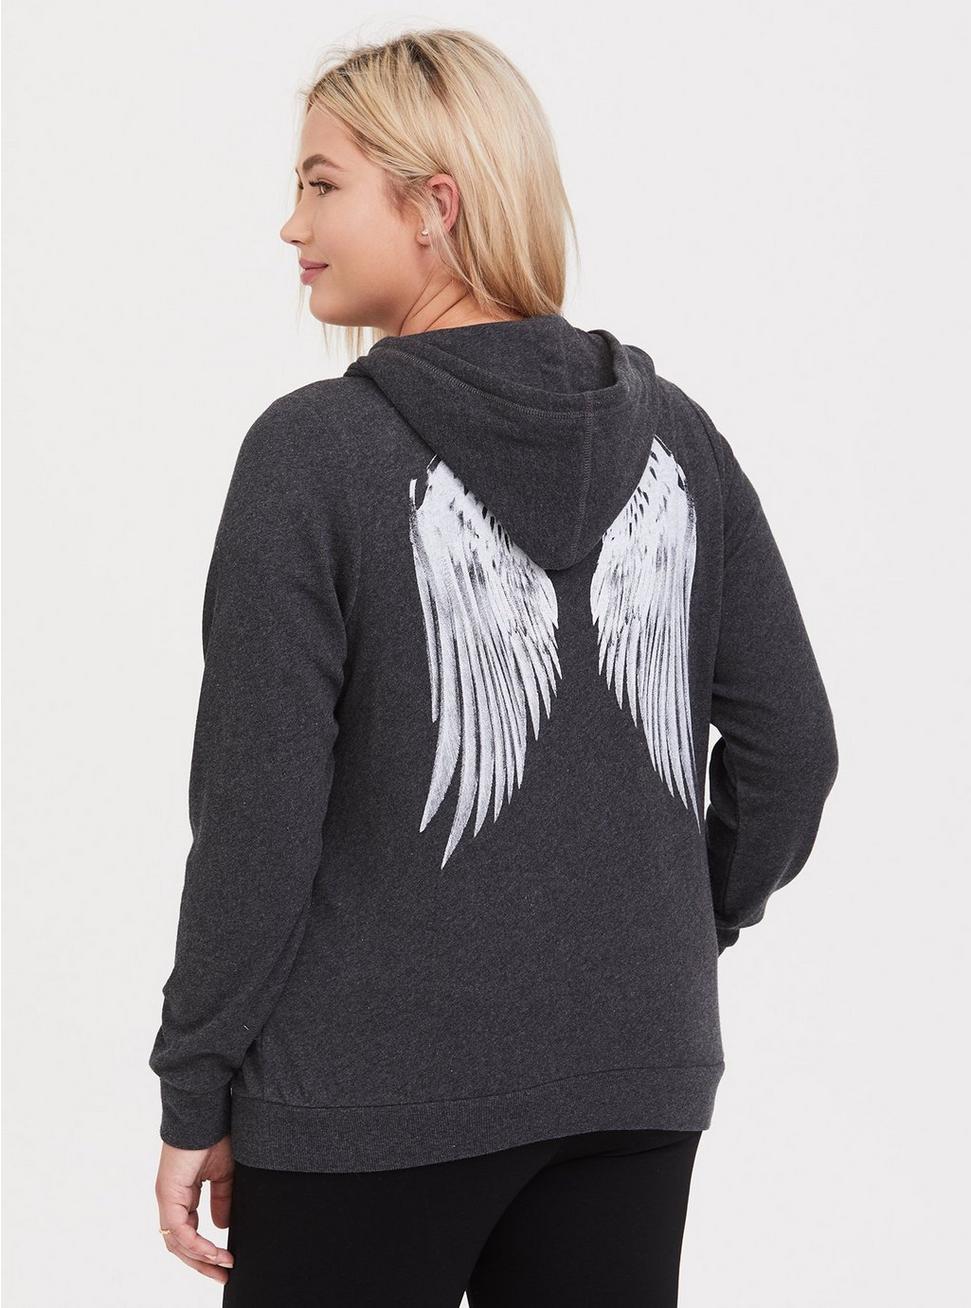 Plus Size - Charcoal Grey & White Wings Zip Hoodie - Torrid